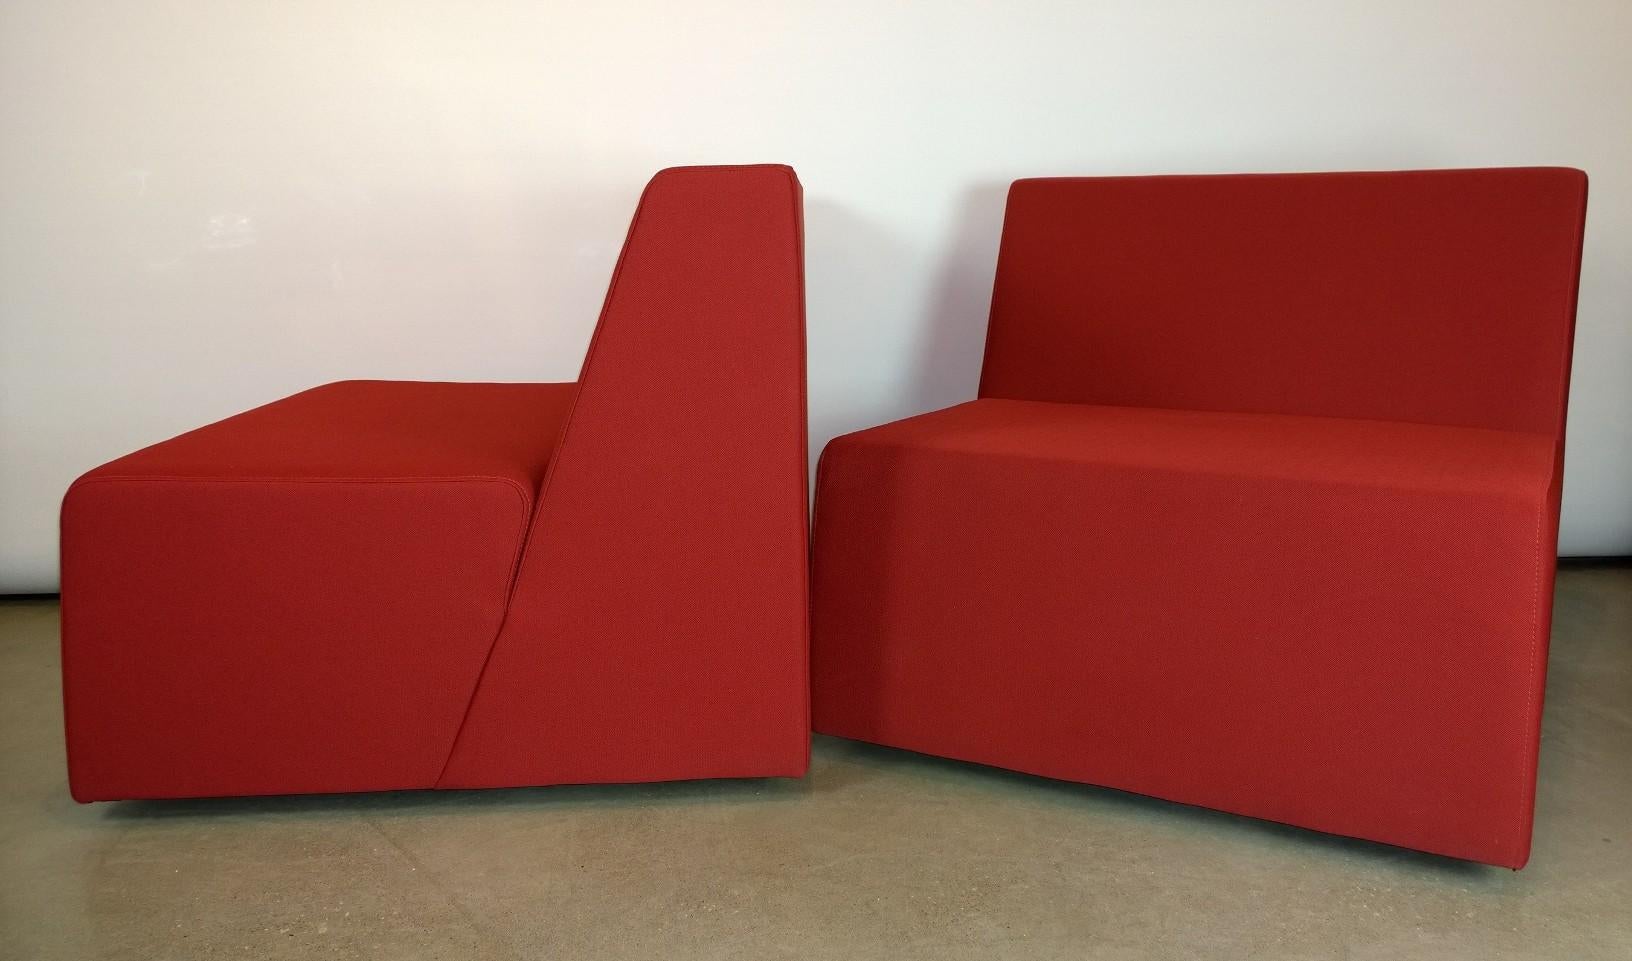 turnstone chairs